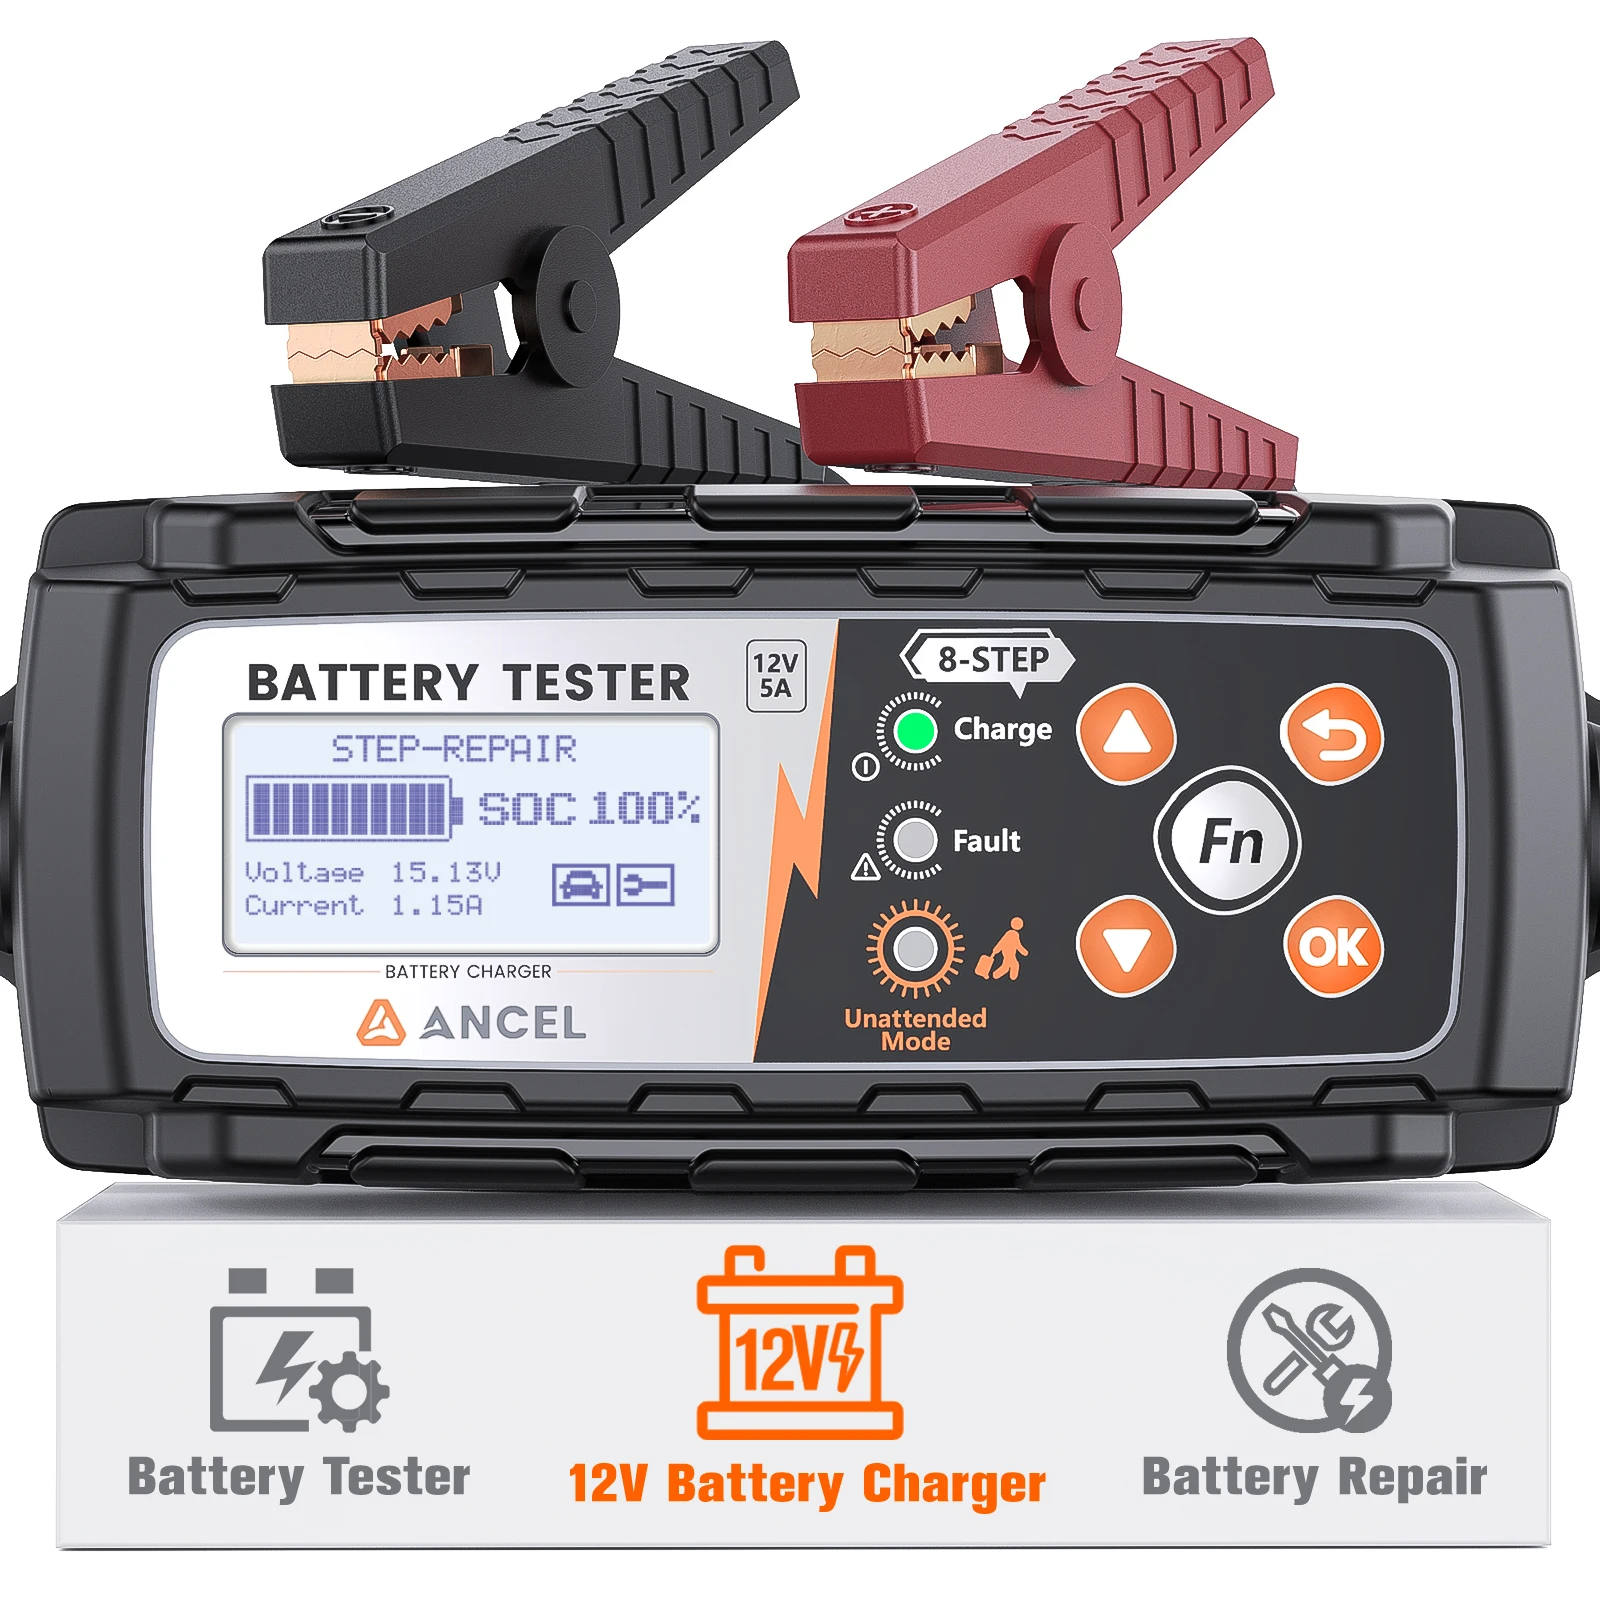 ancel-probador-de-bateria-de-coche-analizador-de-bateria-de-mantenimiento-automatico-prueba-de-arranque-herramienta-de-carga-de-bateria-bt521-12v